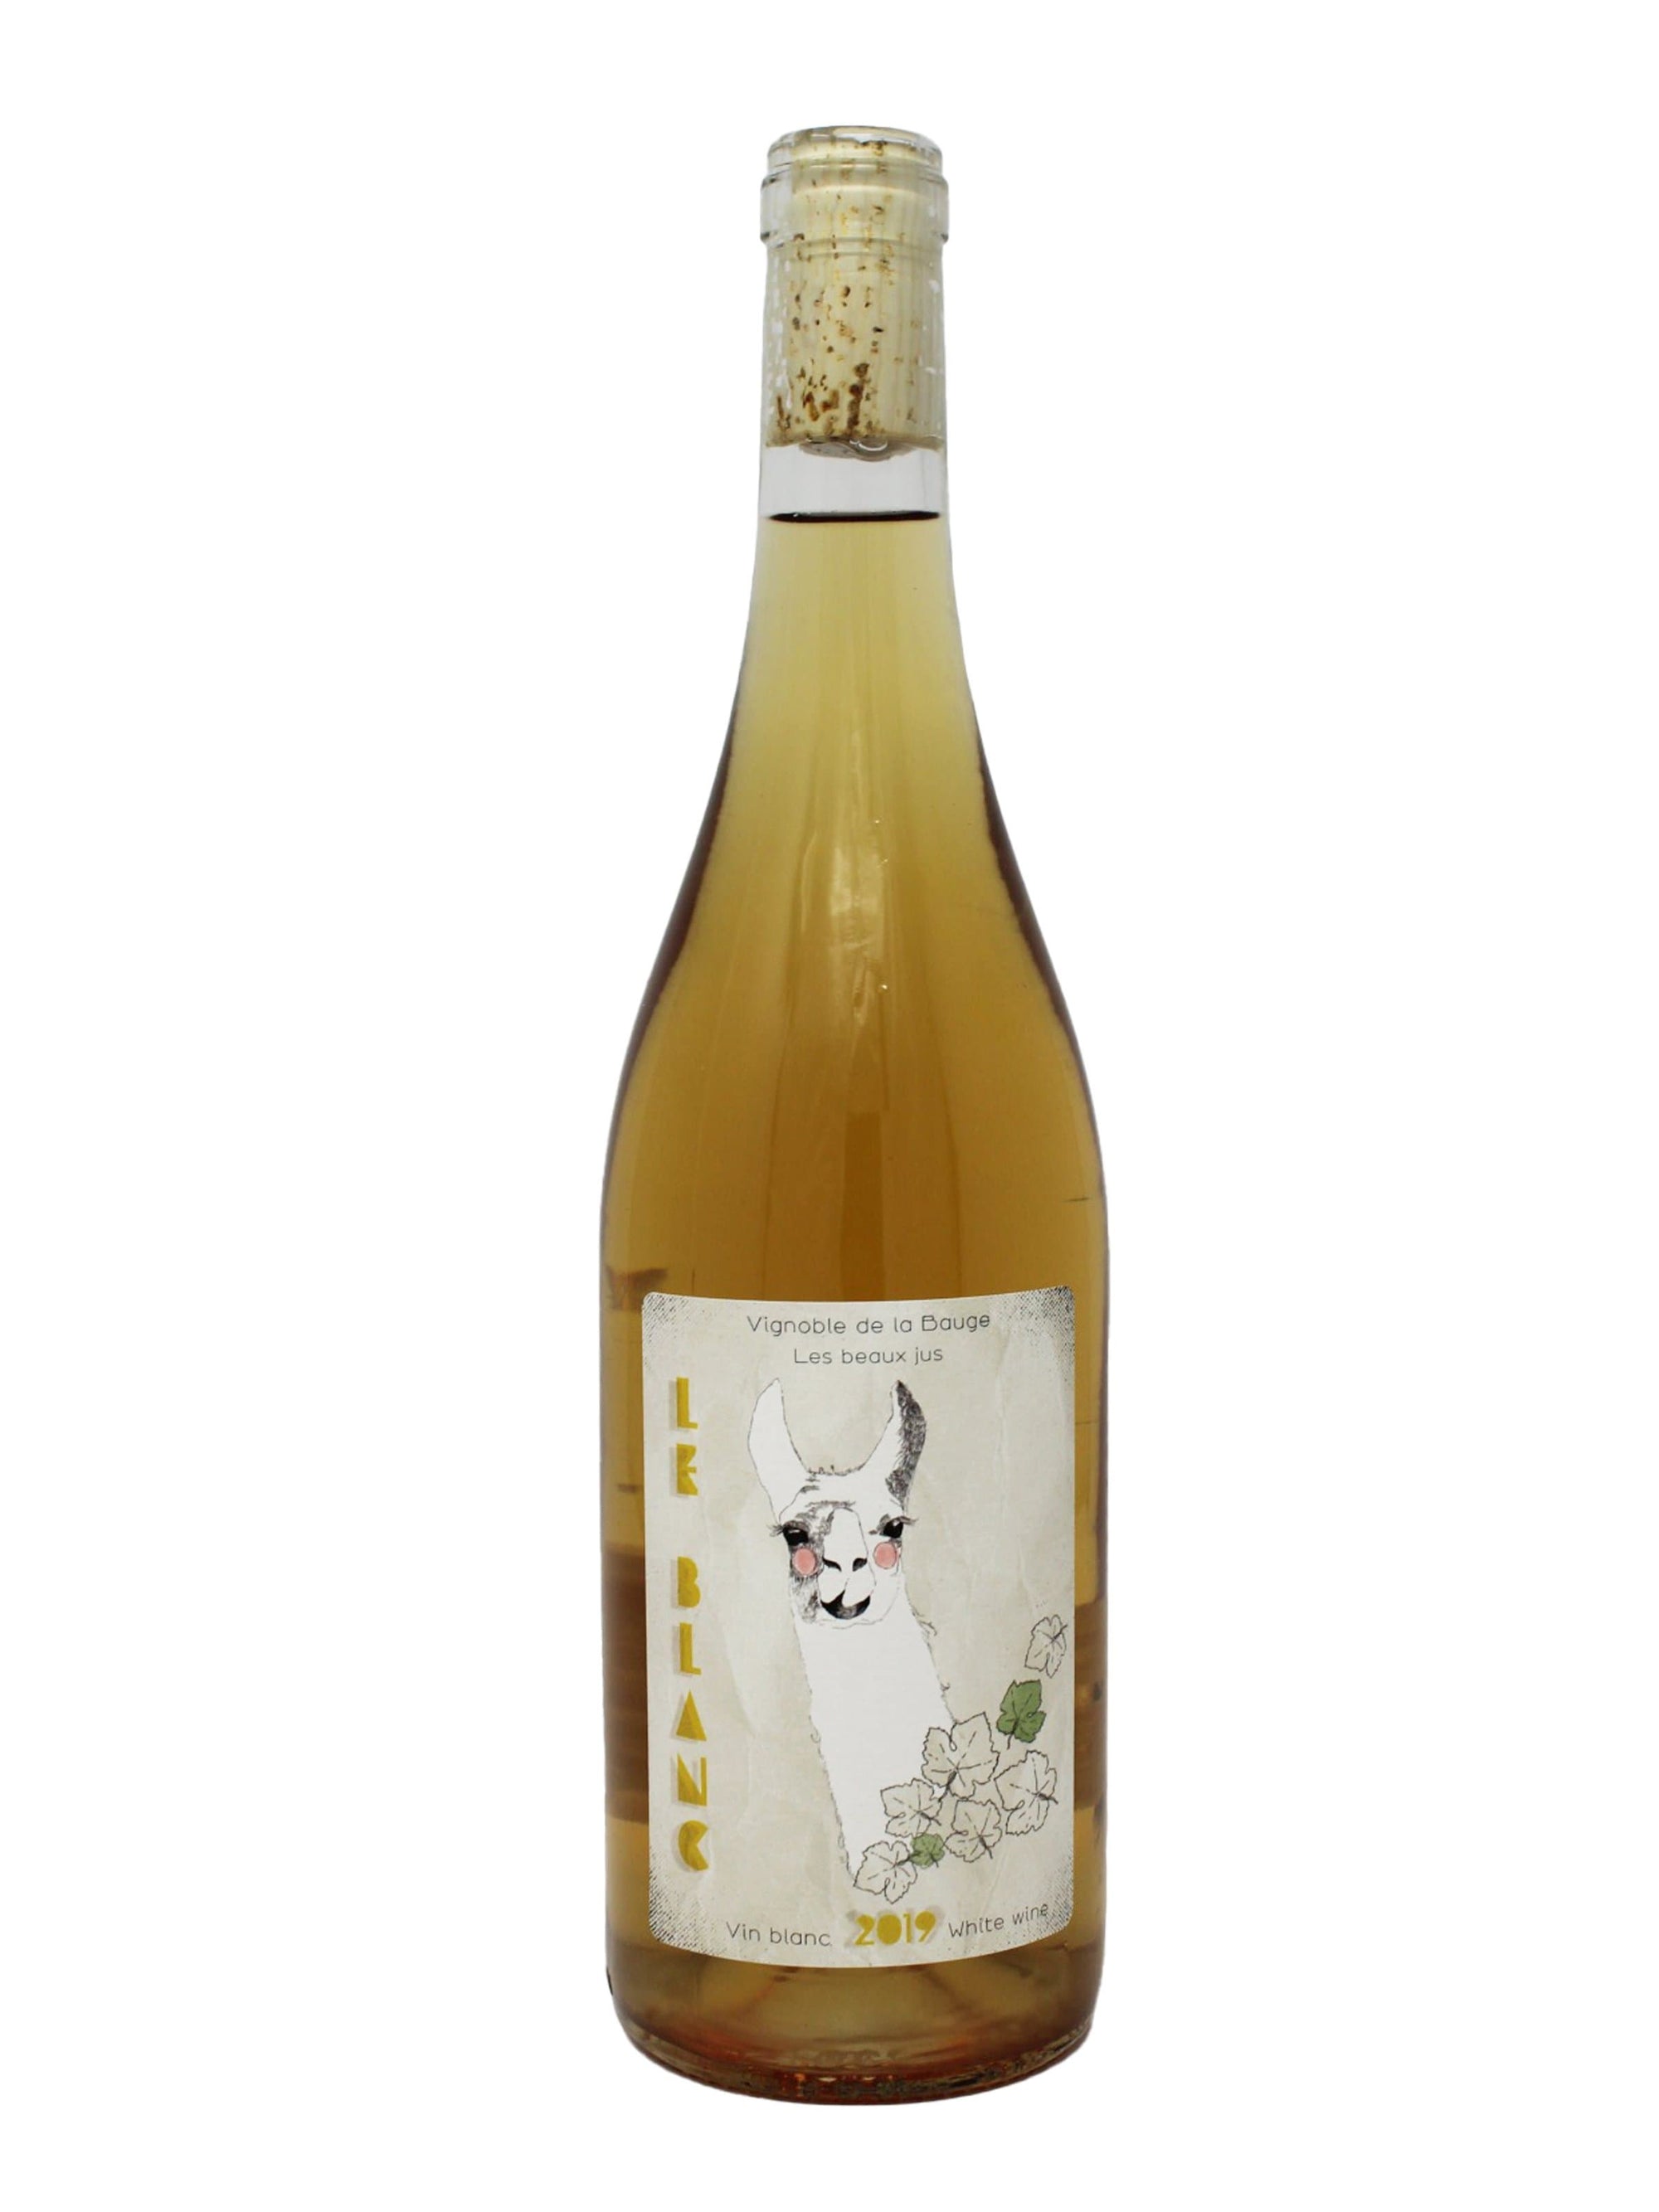 Vignoble de La Bauge vin Beau-jus Blanc - Vin blanc du vignoble de La Bauge